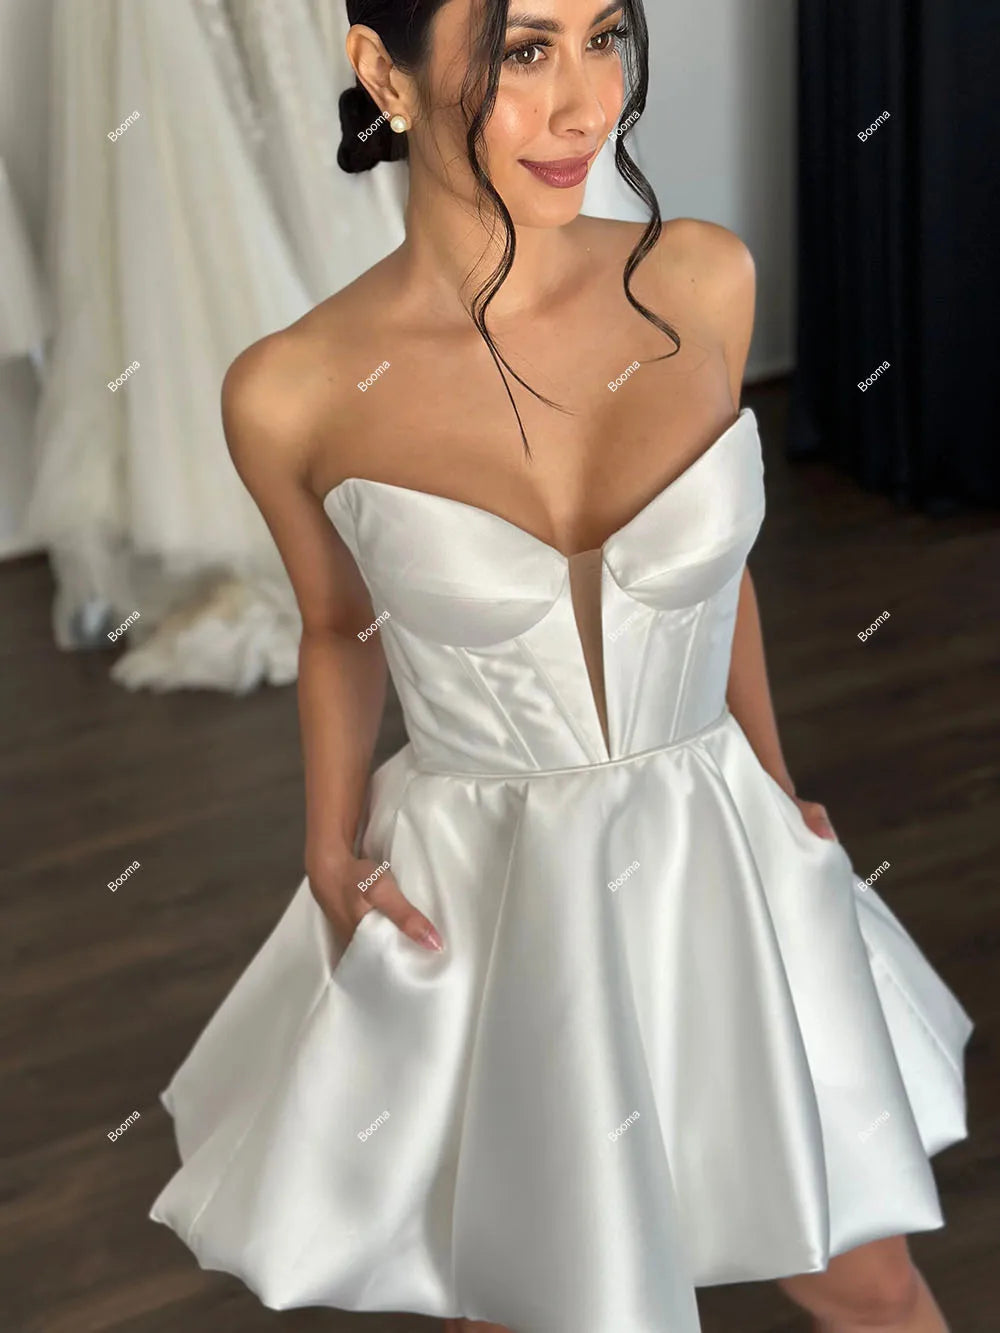 A-line kurze Hochzeitsfeier Kleider Schatz elegante Bräute Kleider für Frauen Puffrock Promkleider Cocktailkleid